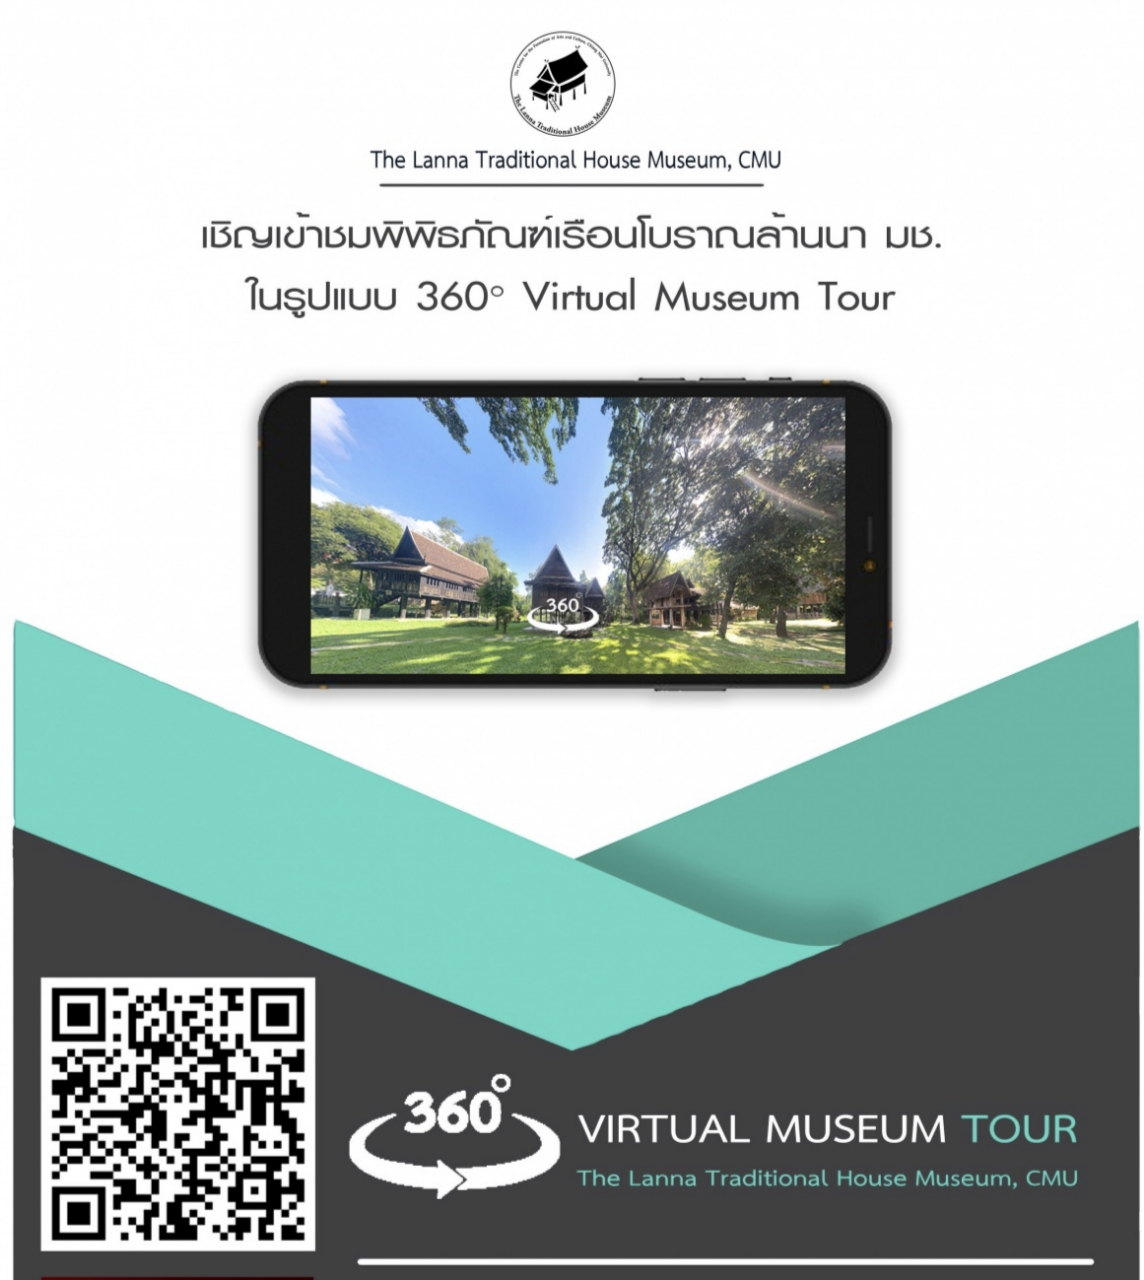 เชิญเที่ยวชมพิพิธภัณฑ์เรือนโบราณล้านนา มช.  ในรูปแบบ 360  Virtual Museum Tour 